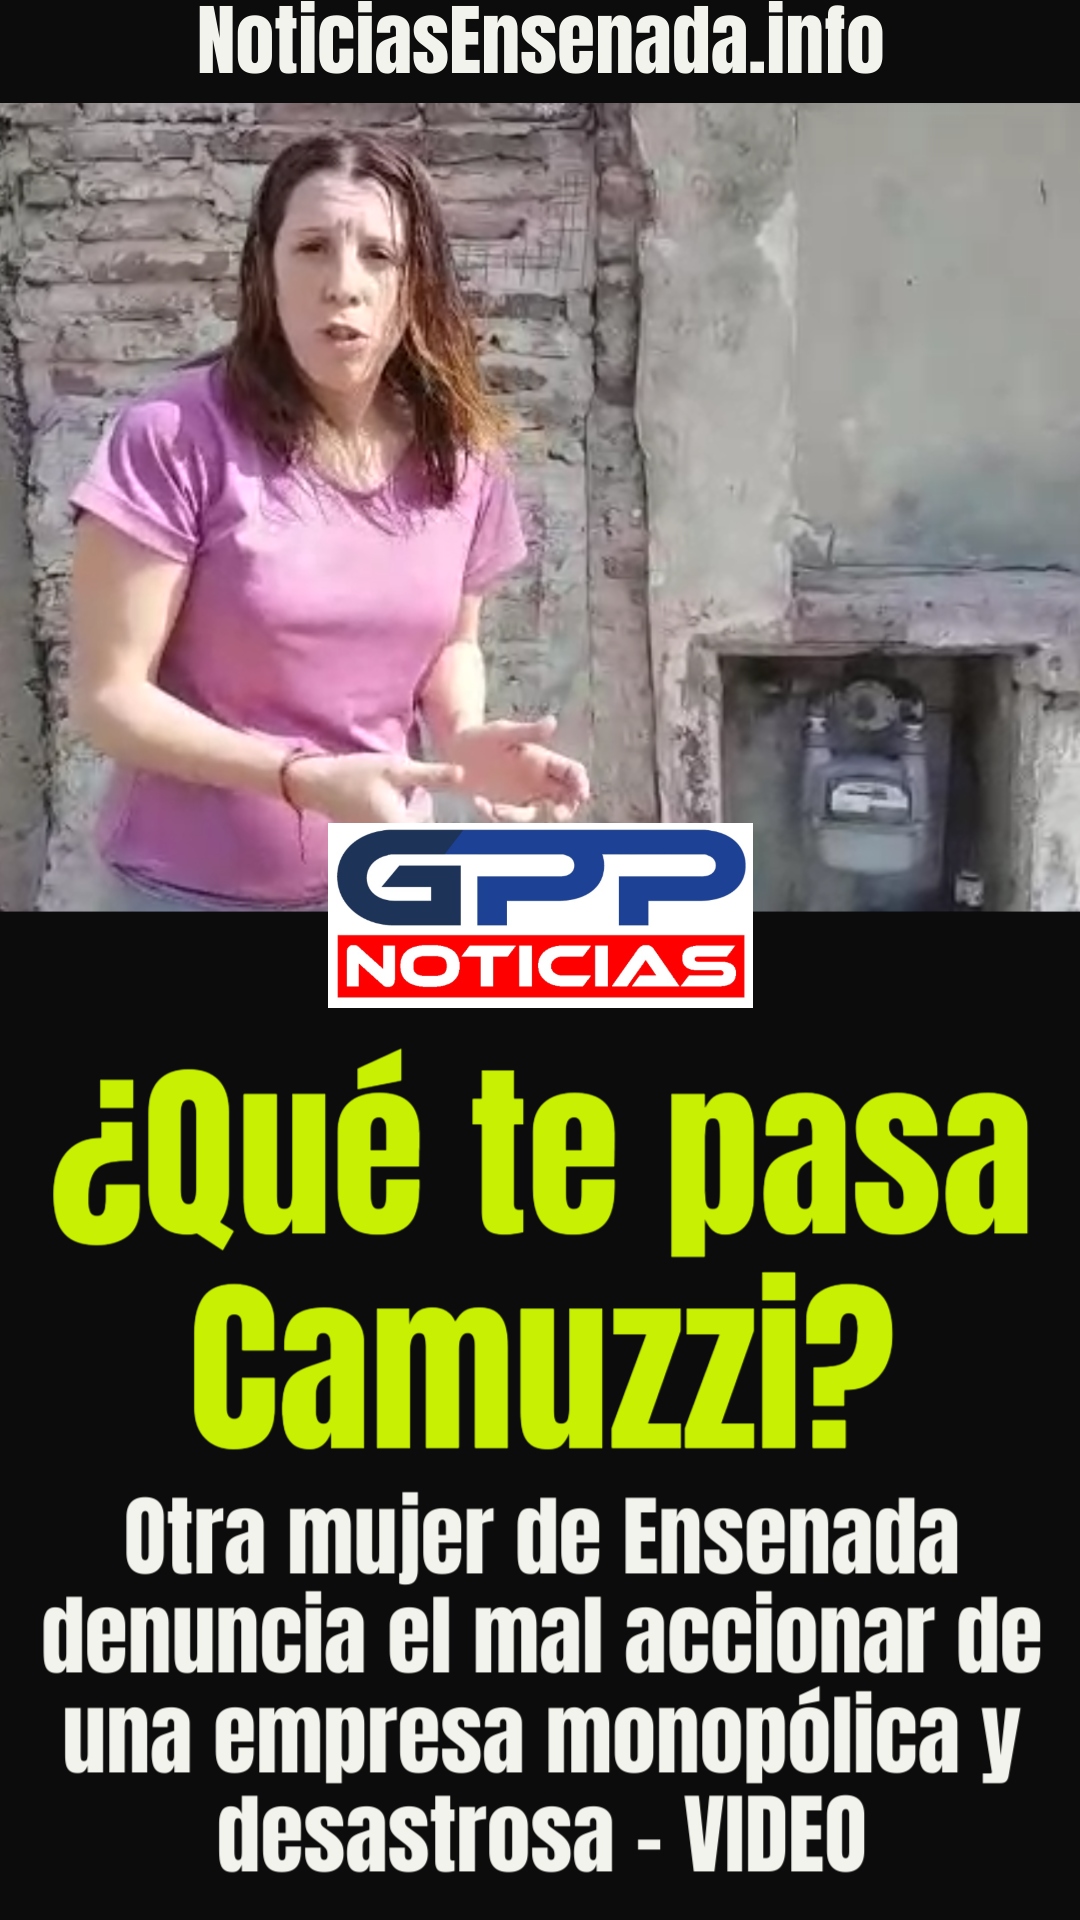 ¿Qué te pasa Camuzzi? Otra mujer de Ensenada denuncia el mal accionar de una empresa monopólica y desastrosa - VIDEO